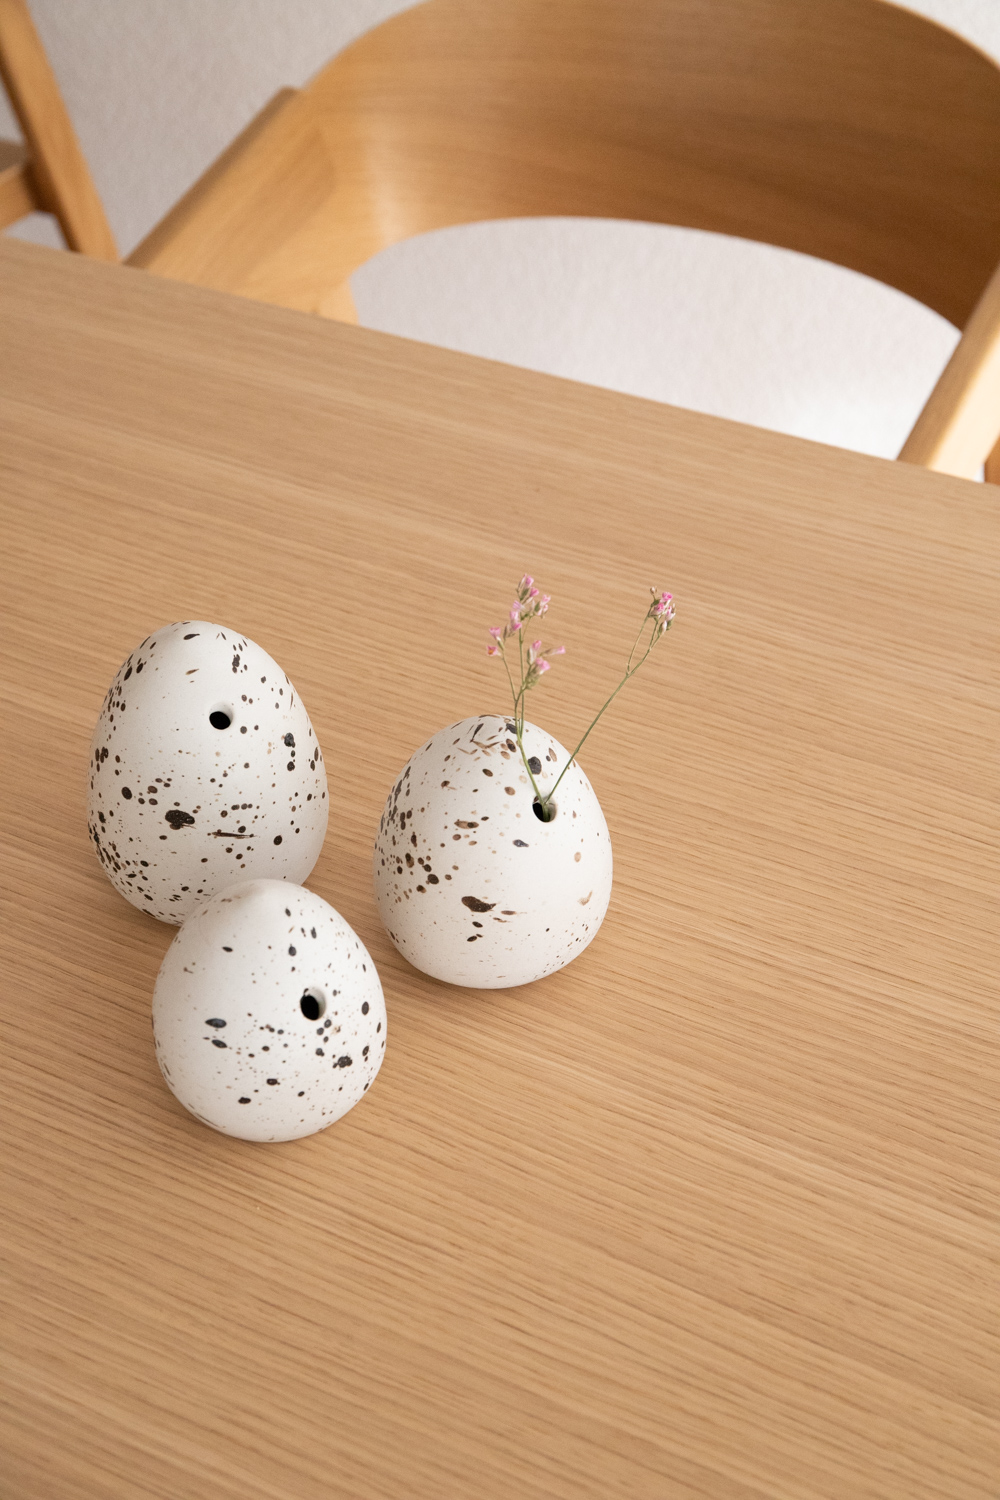 Handmade Ceramic Egg Vase